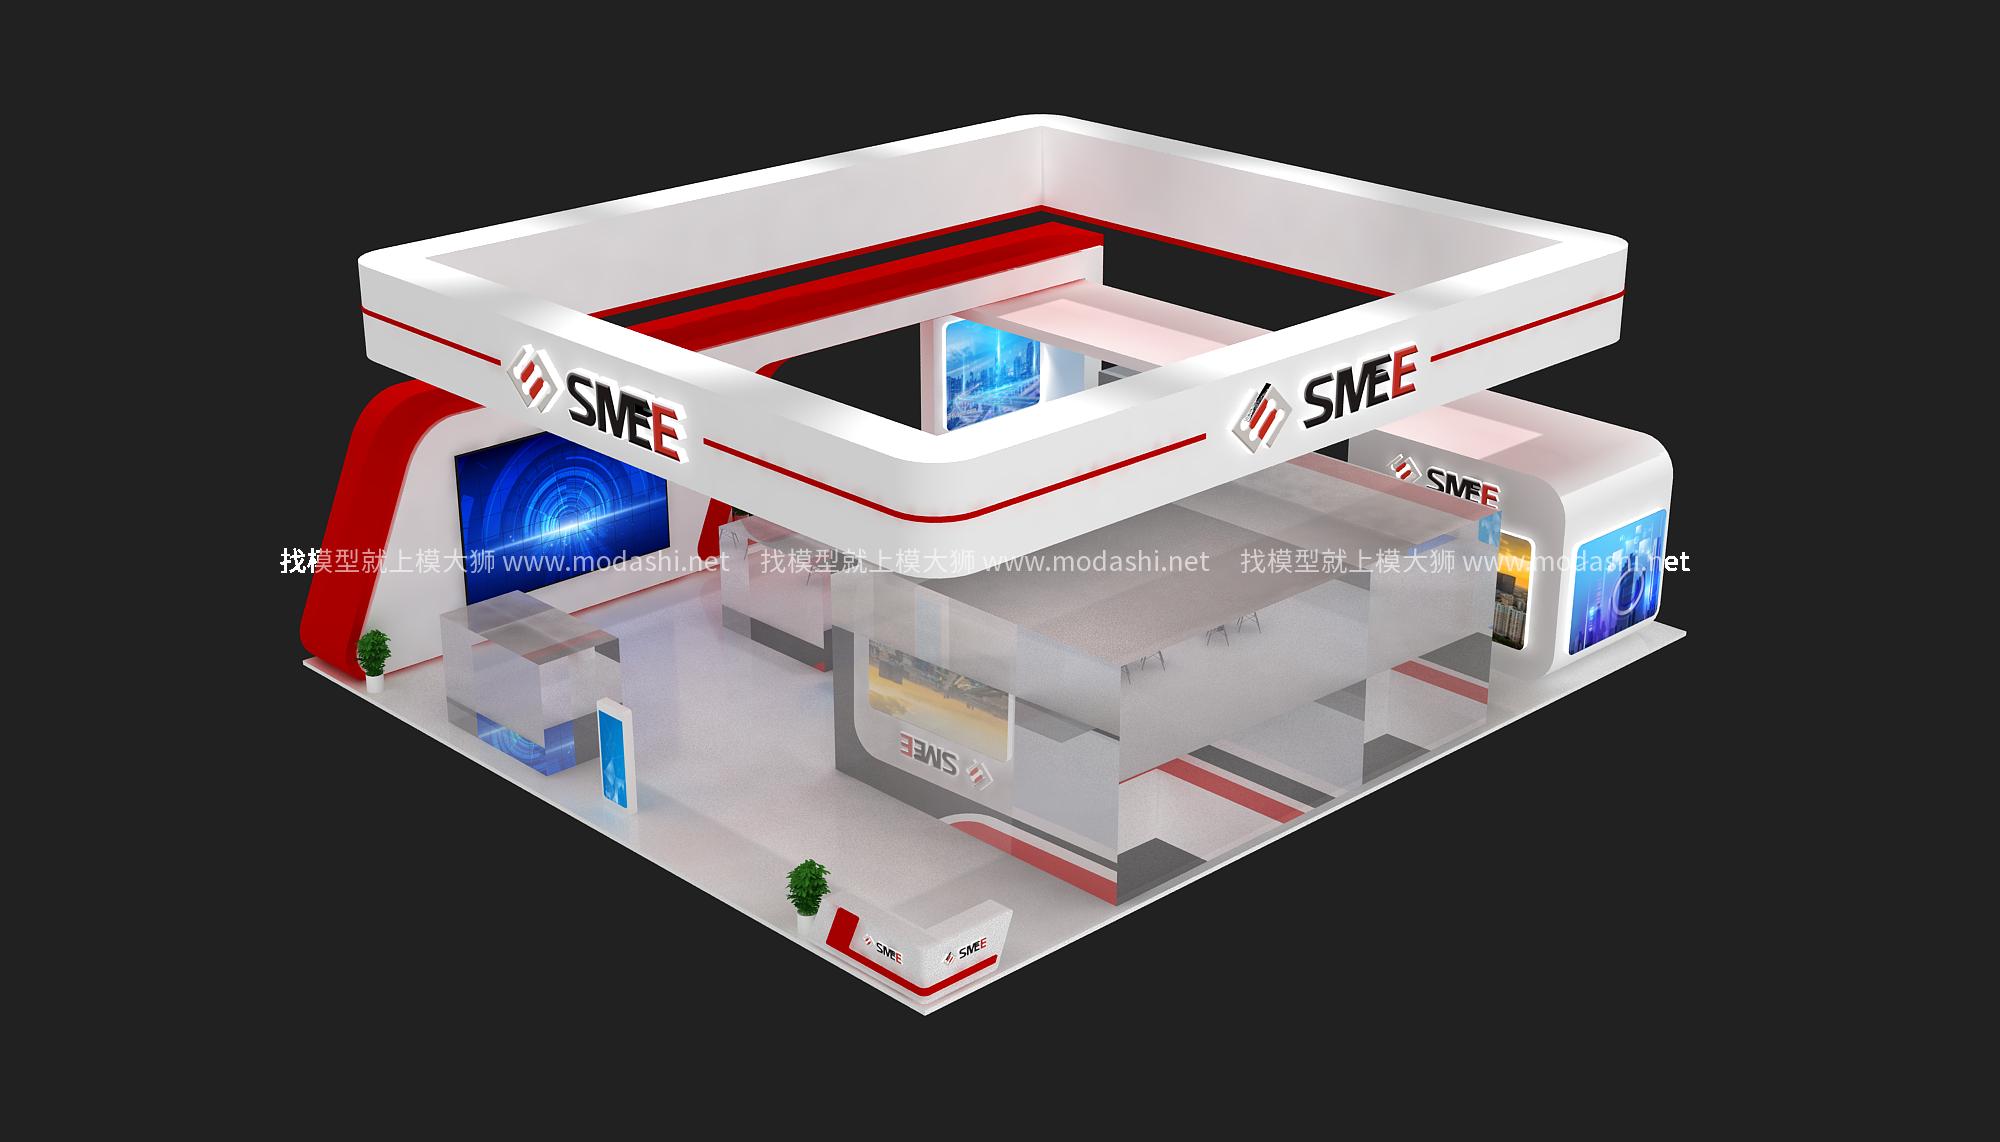 上海微电子展览模型